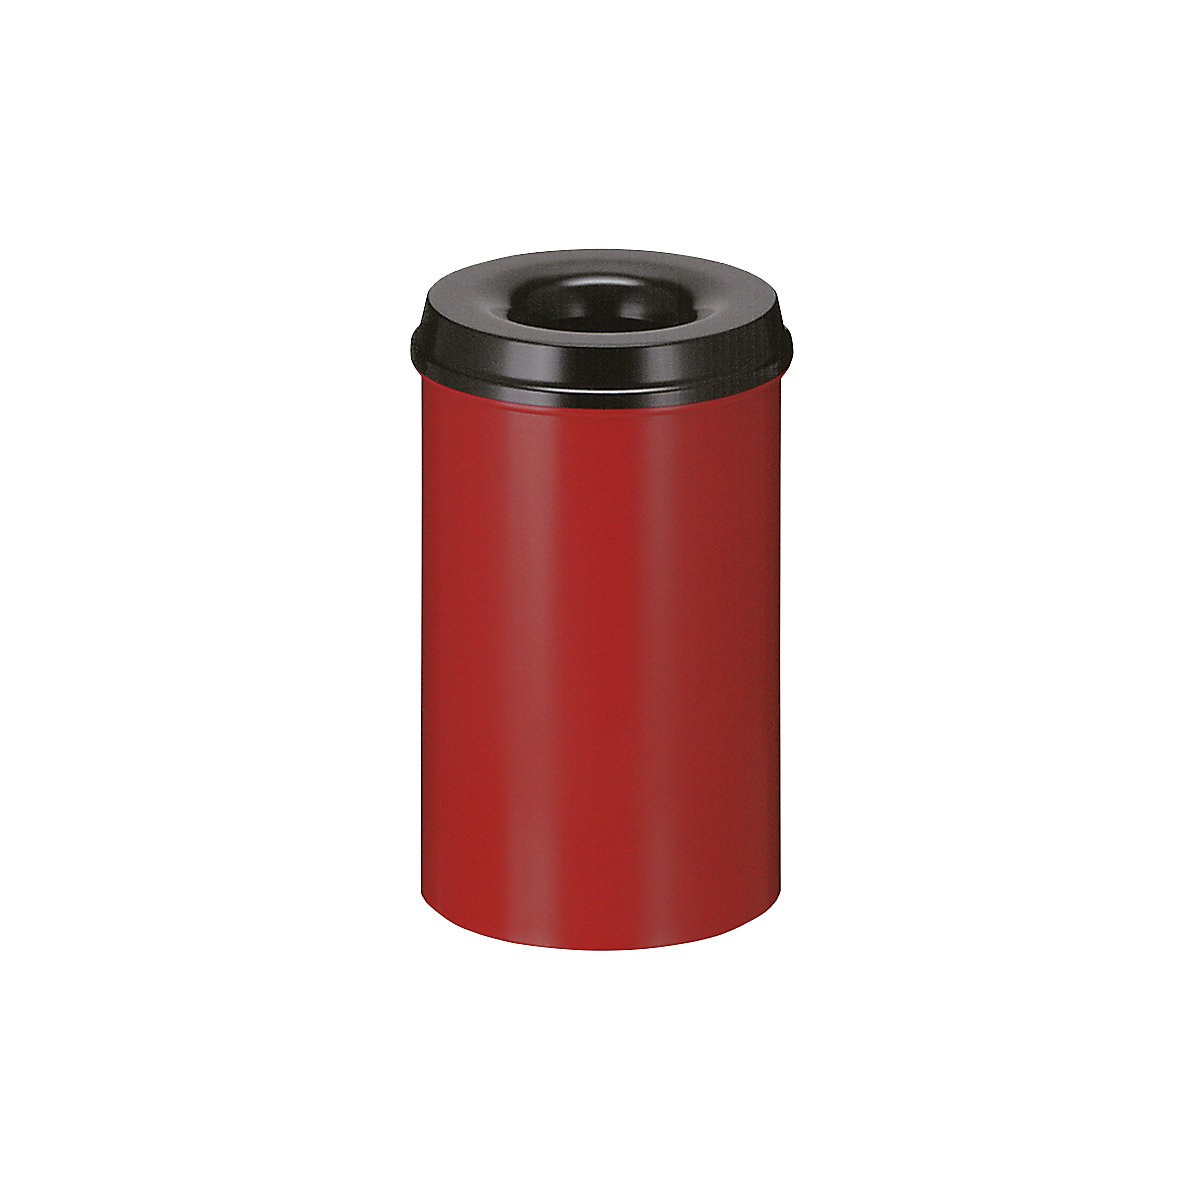 Corbeille à papier auto-extinguible, capacité 20 l, h x Ø 426 x 260 mm, corps rouge / étouffoir noir